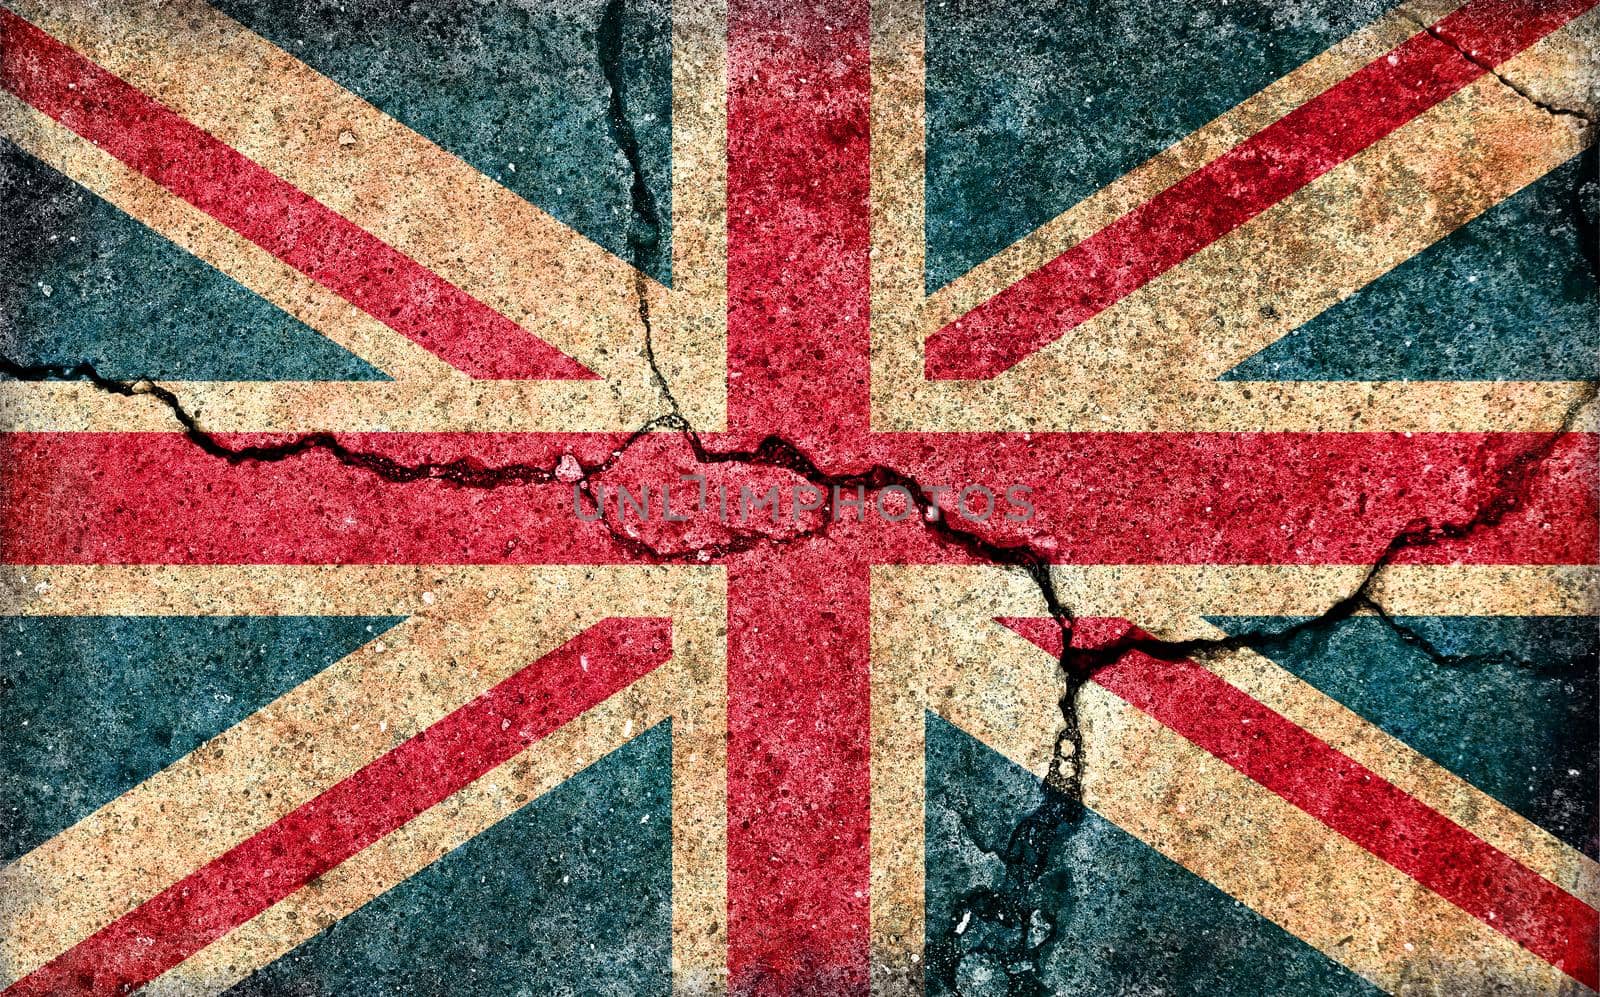 Grunge country flag illustration (cracked concrete background) / UK, United Kingdom